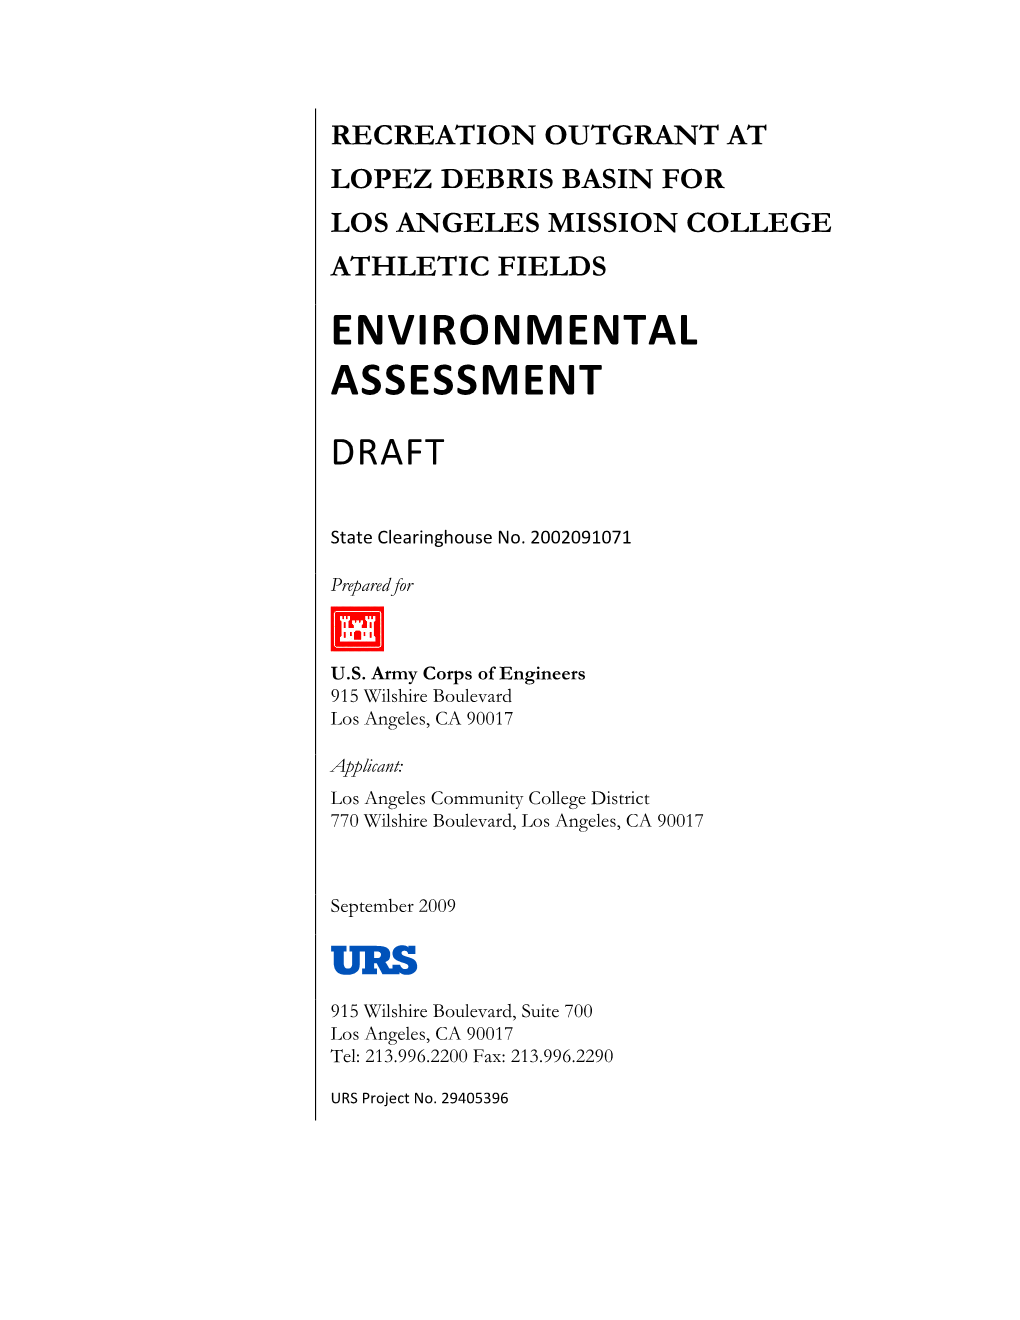 Environmental Assessment Draft